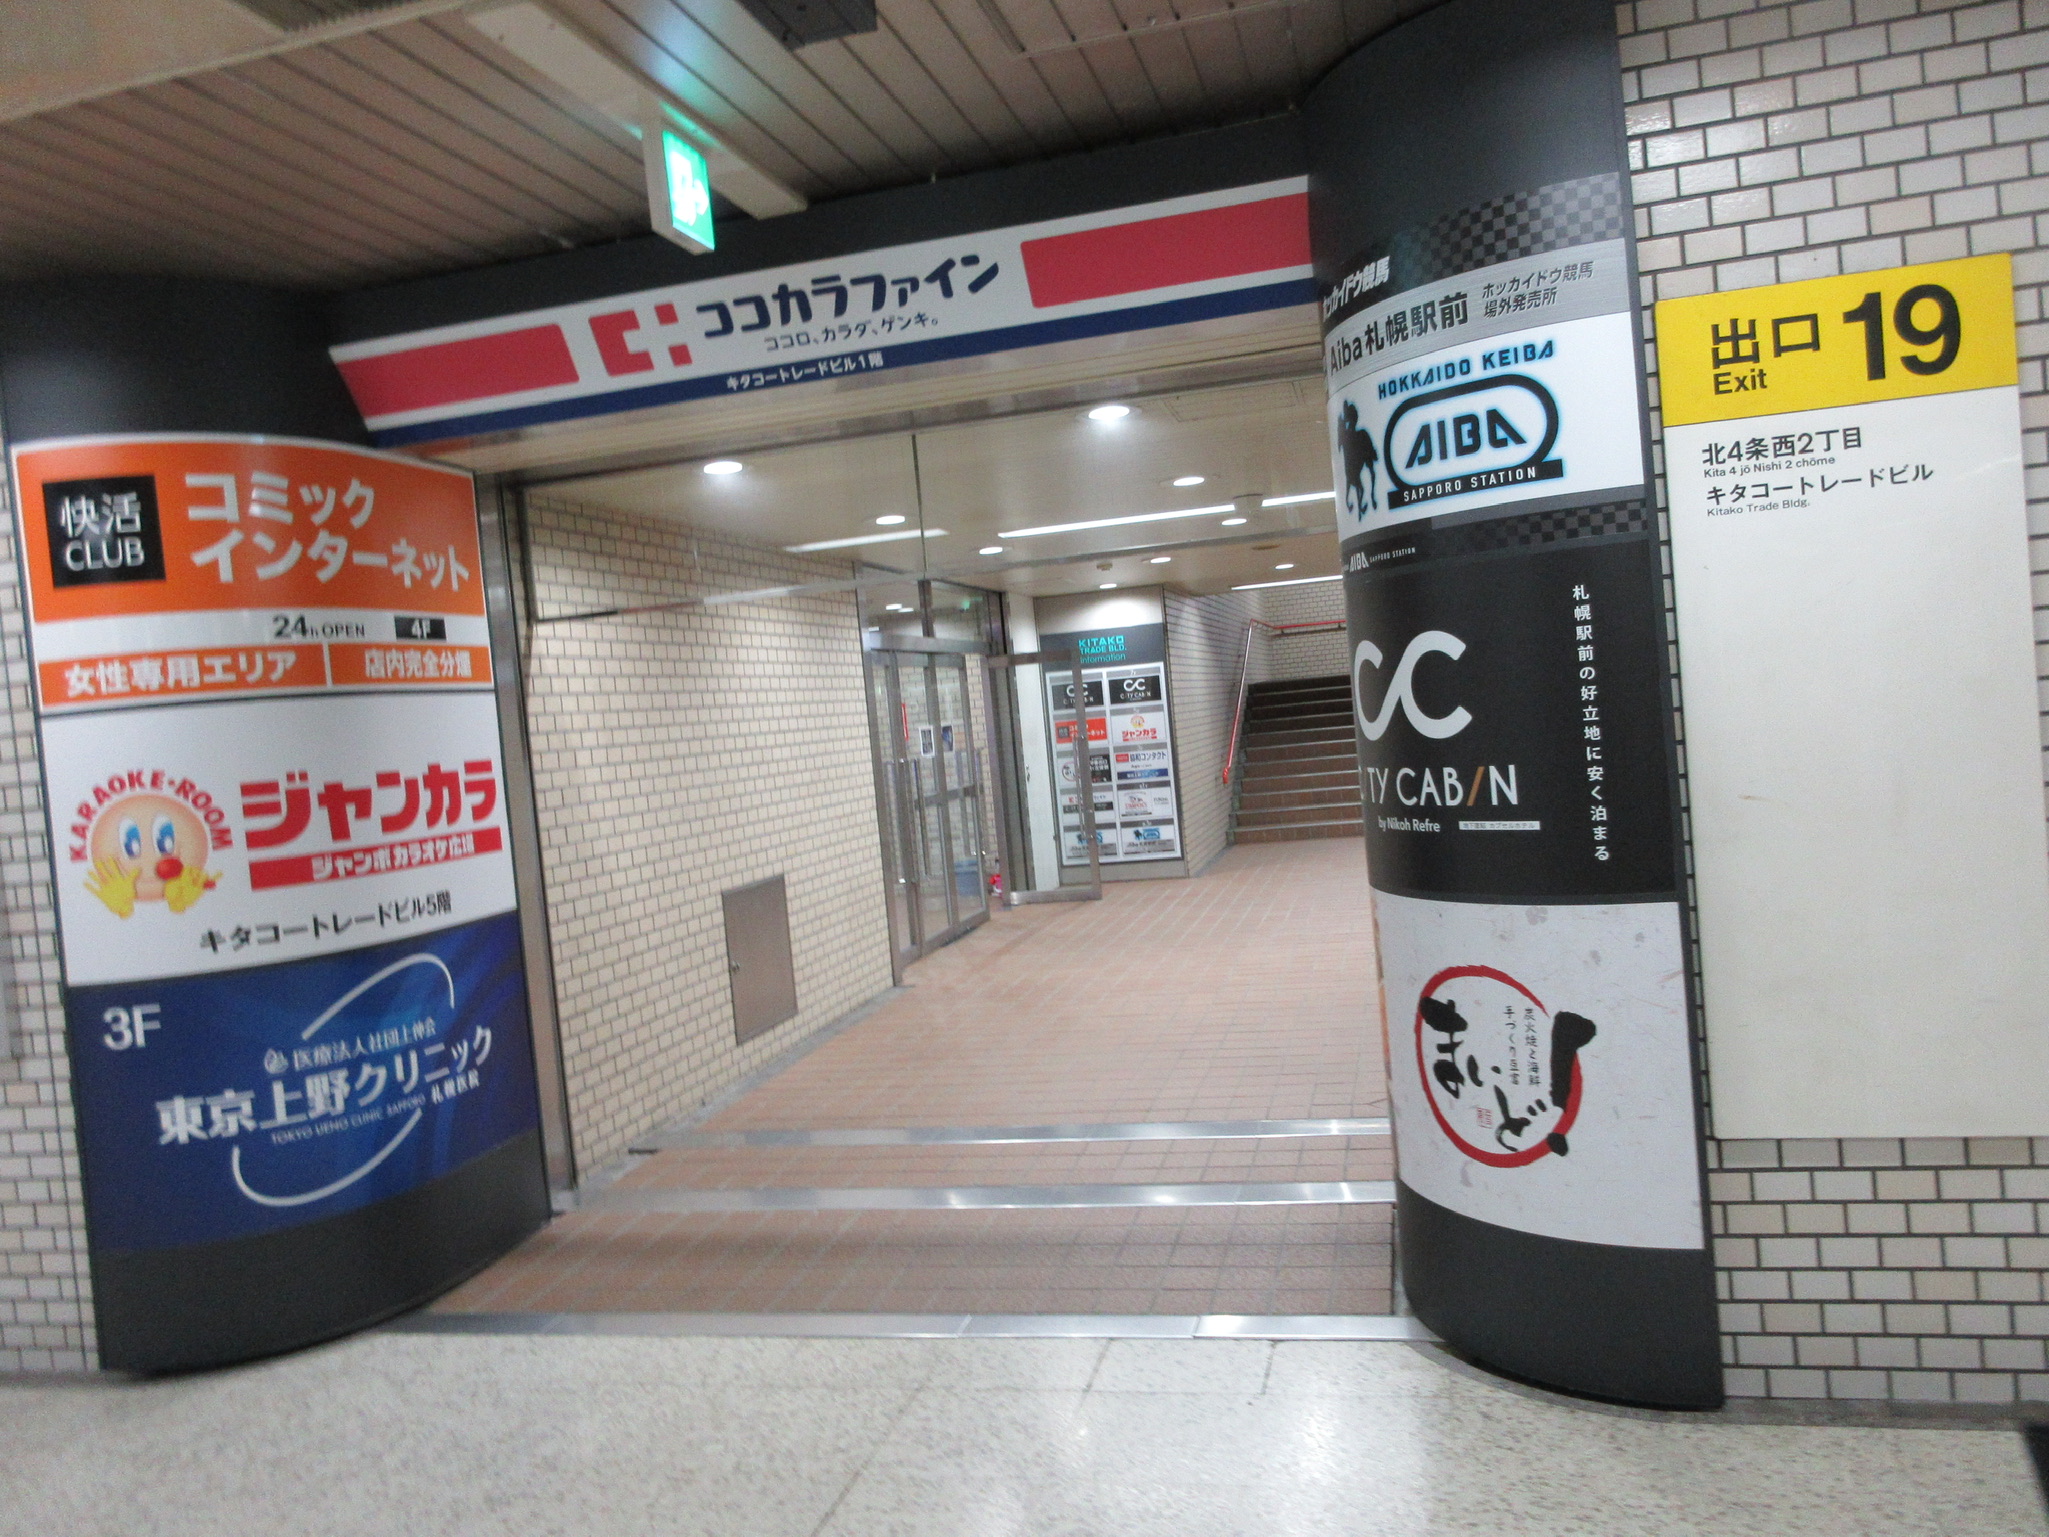 地下にある札幌駅19番出口